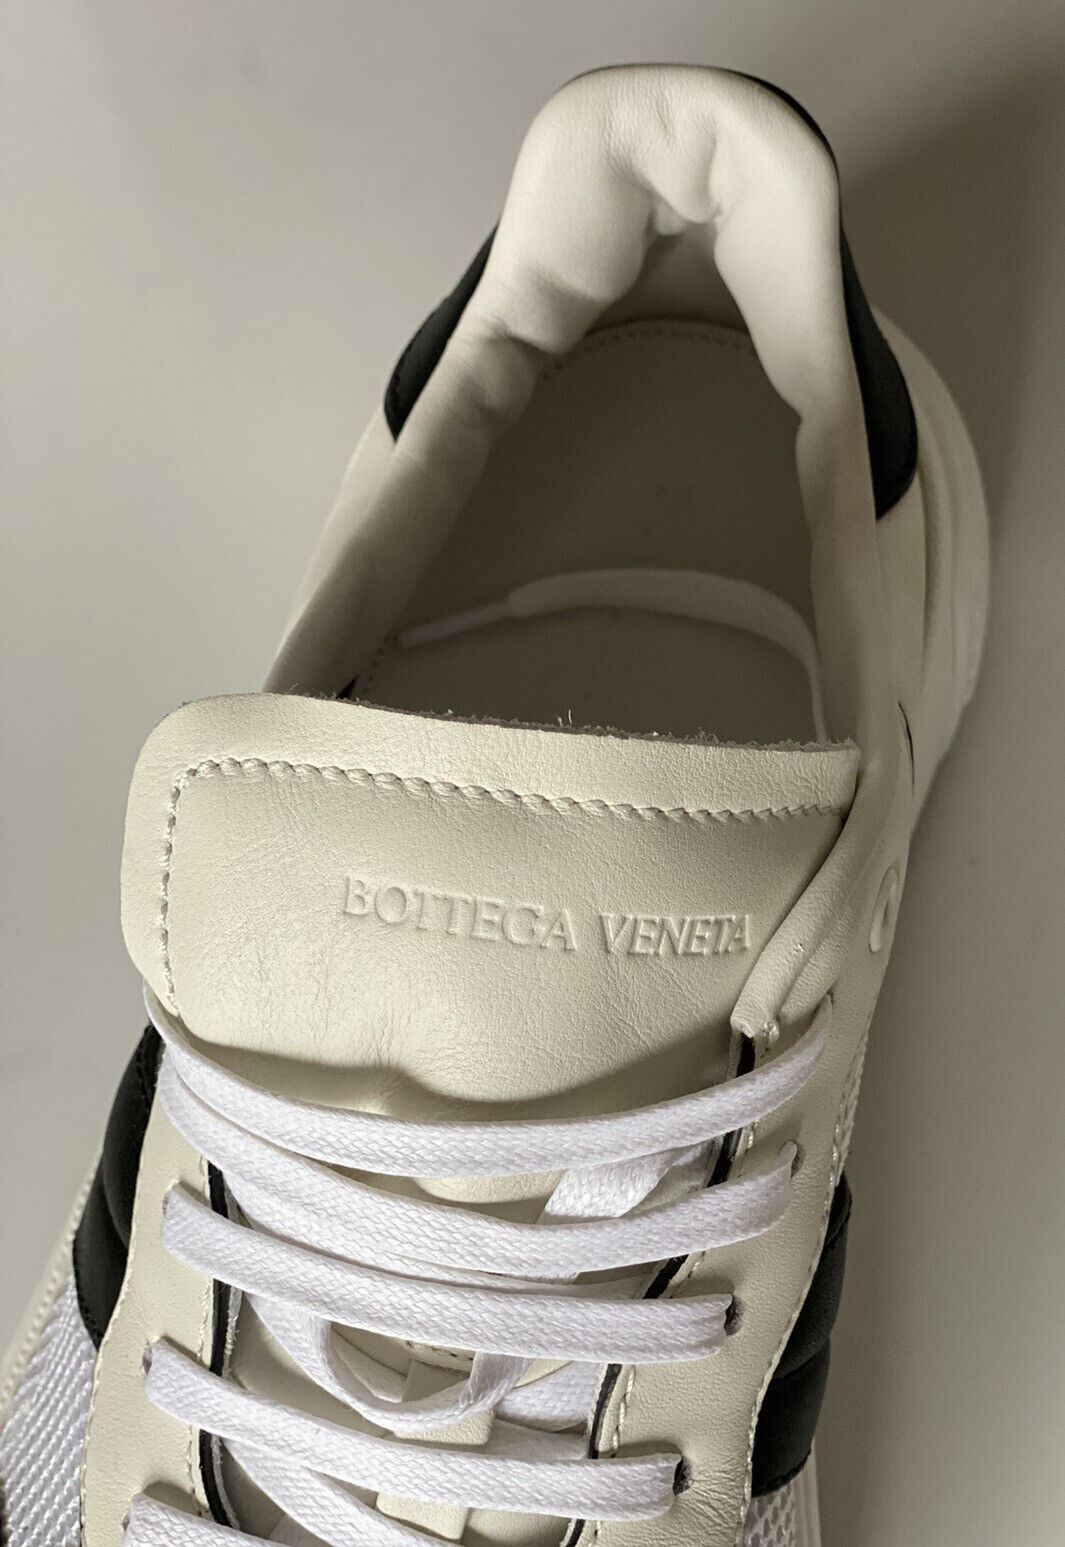 NIB $790 Bottega Veneta Men's Leather & Mesh Sneakers White/Black 12 US 565646